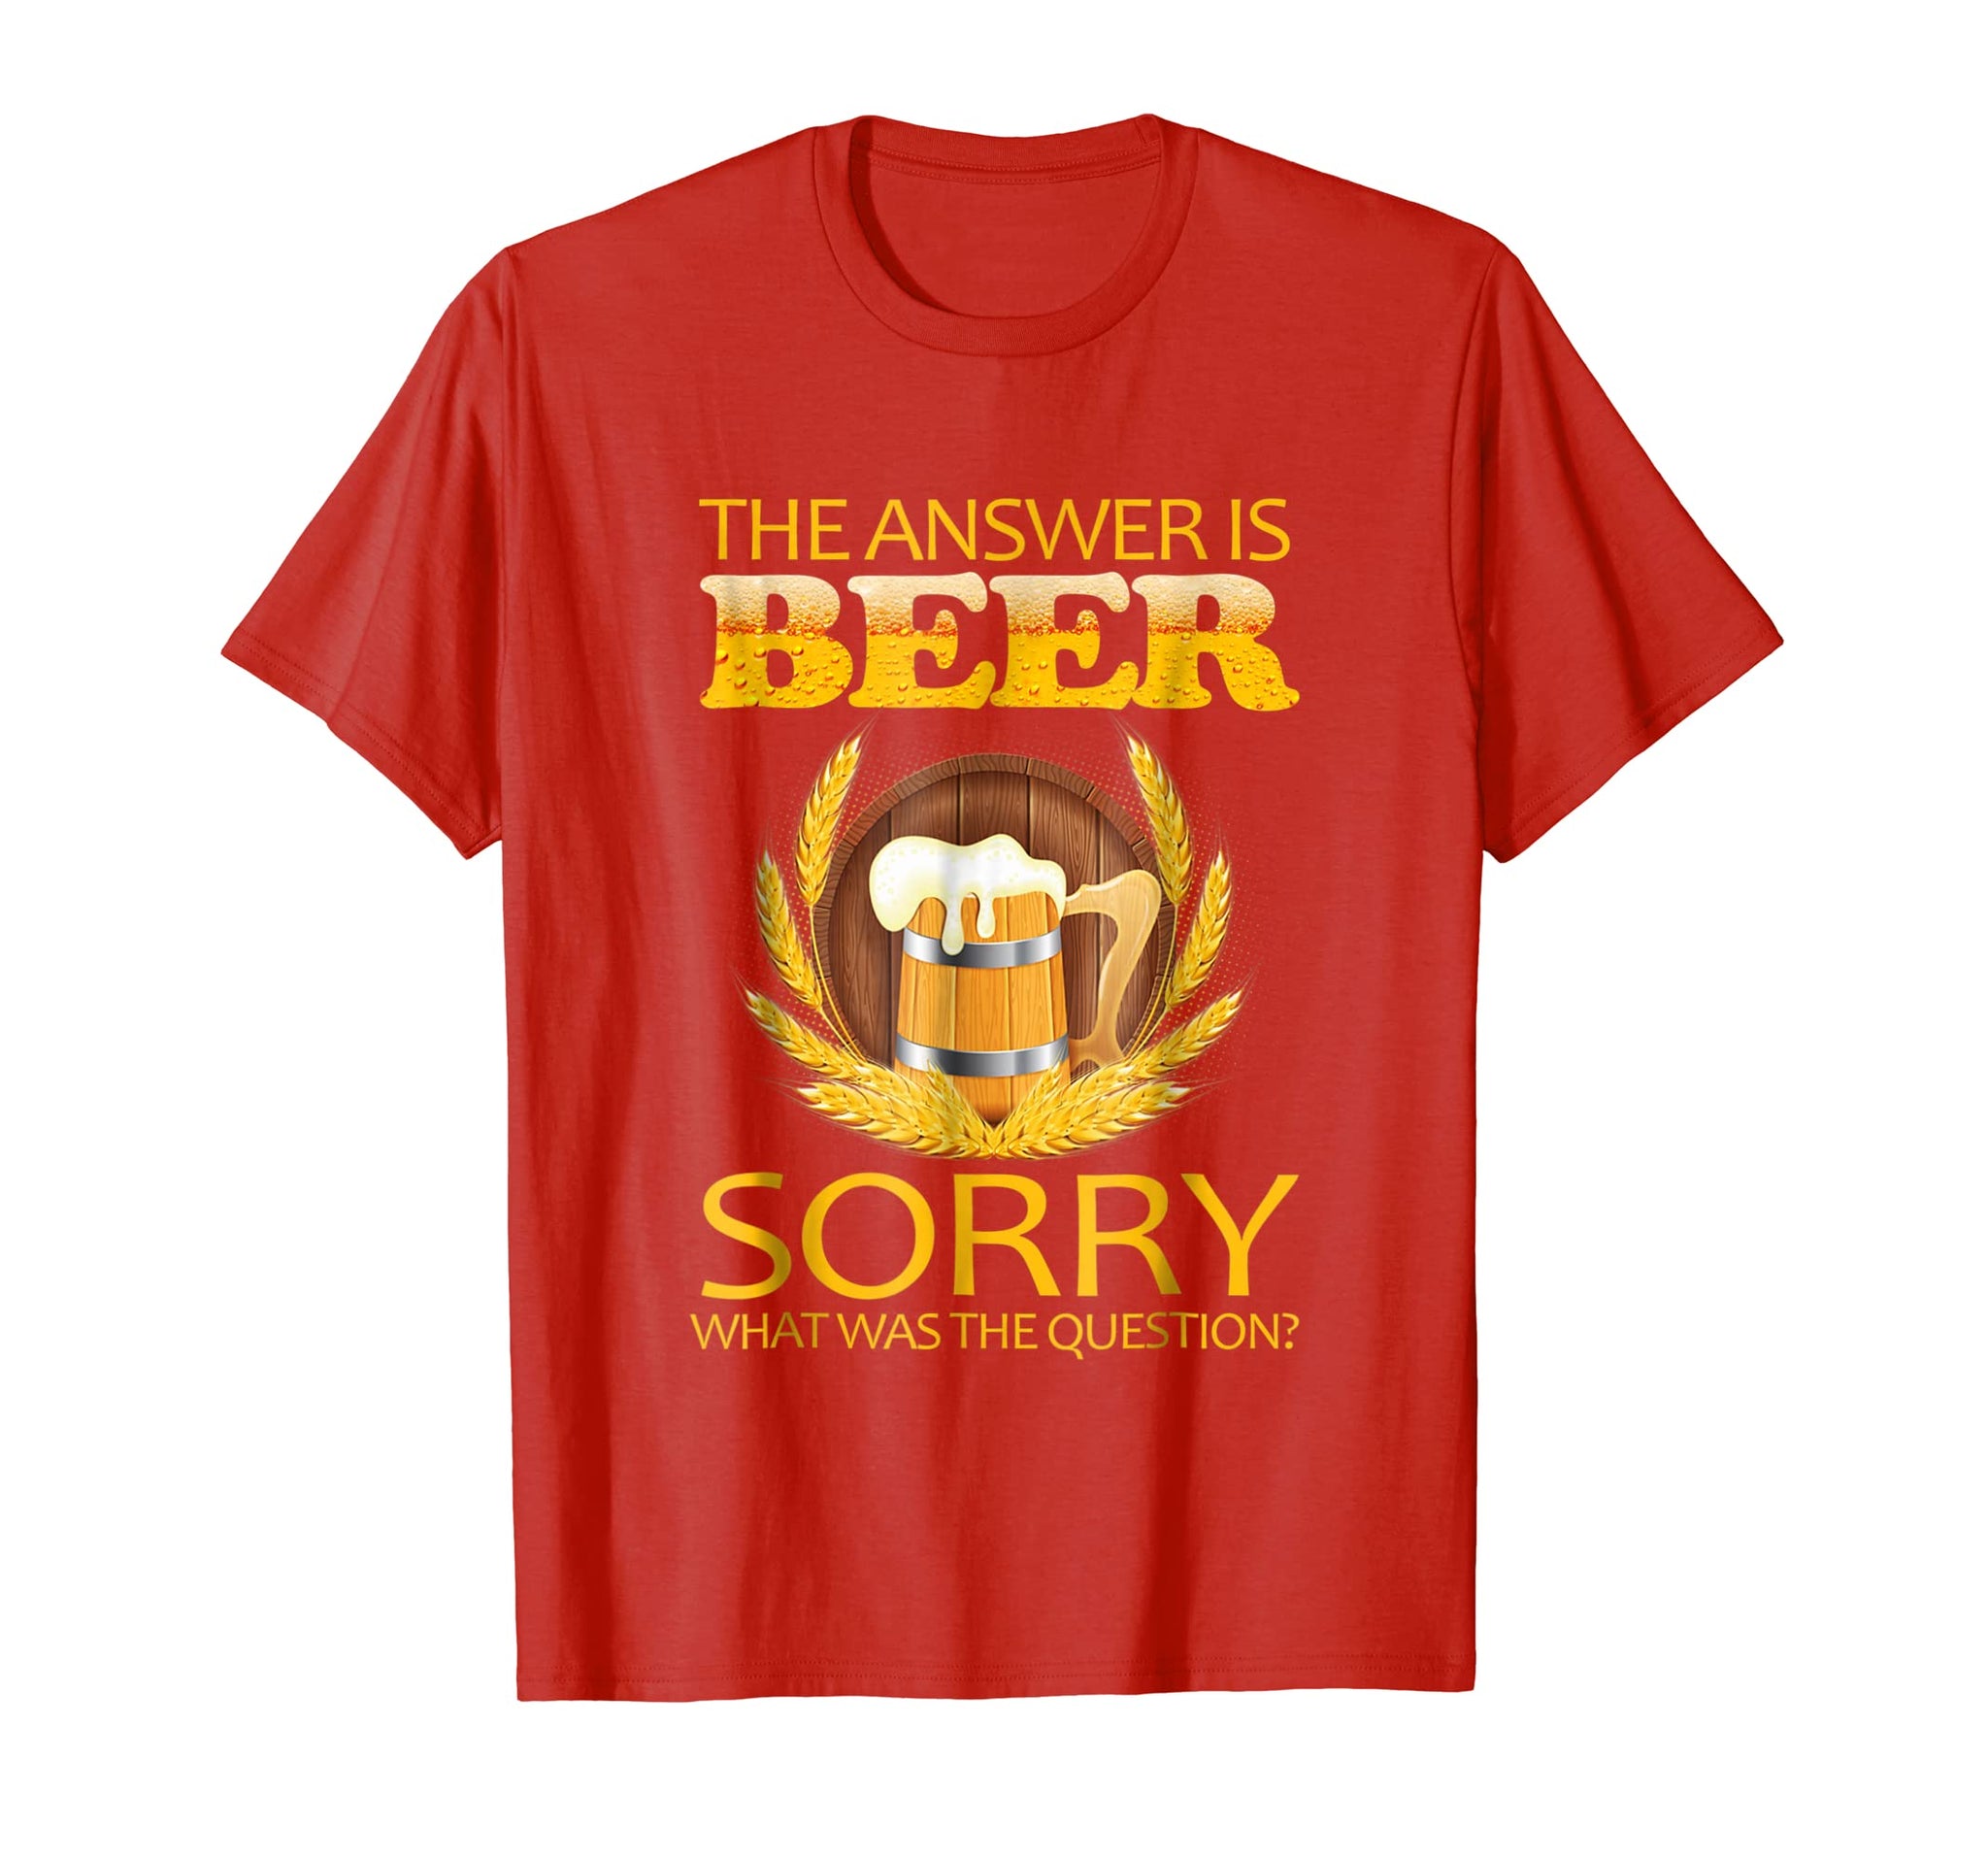 beer t shirts uk